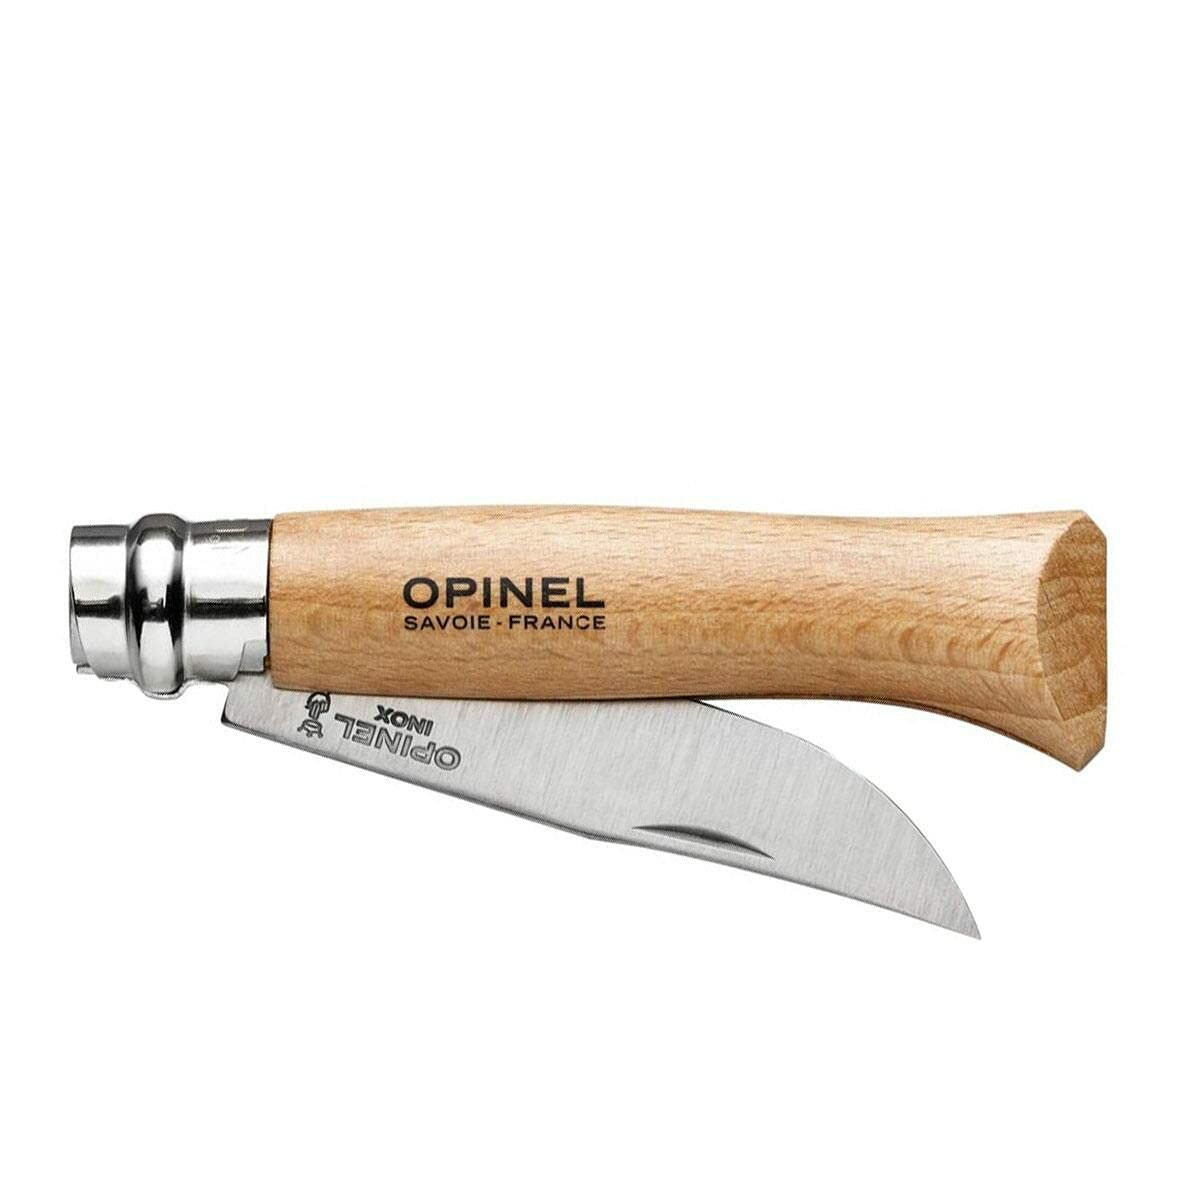 Pocketknife Opinel Nº8 8,5 cm Stainless steel beech wood